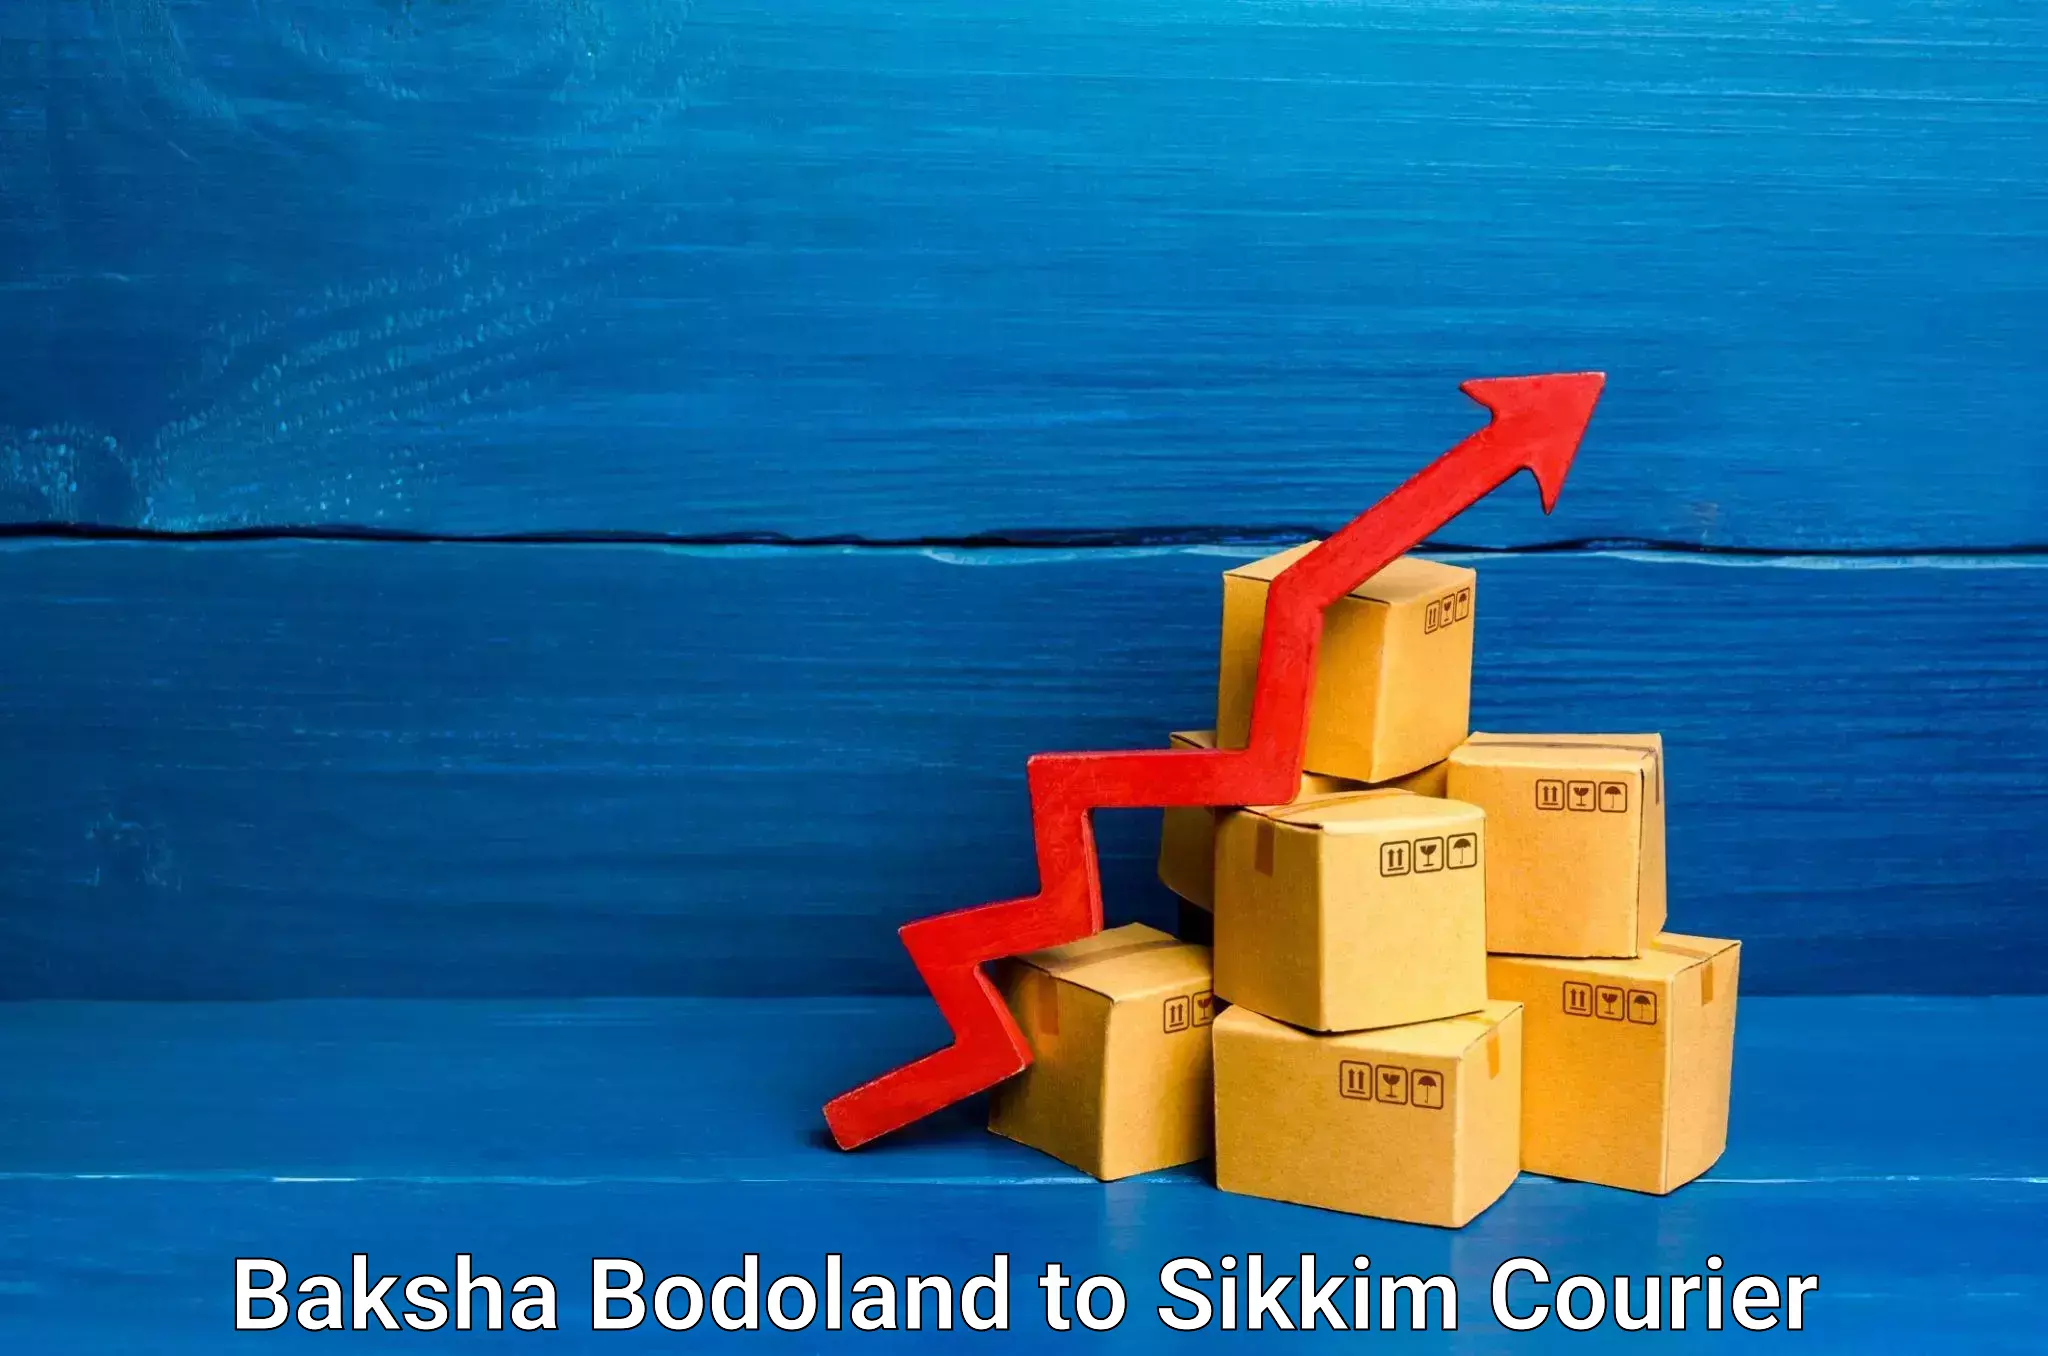 Cash on delivery service Baksha Bodoland to Pelling